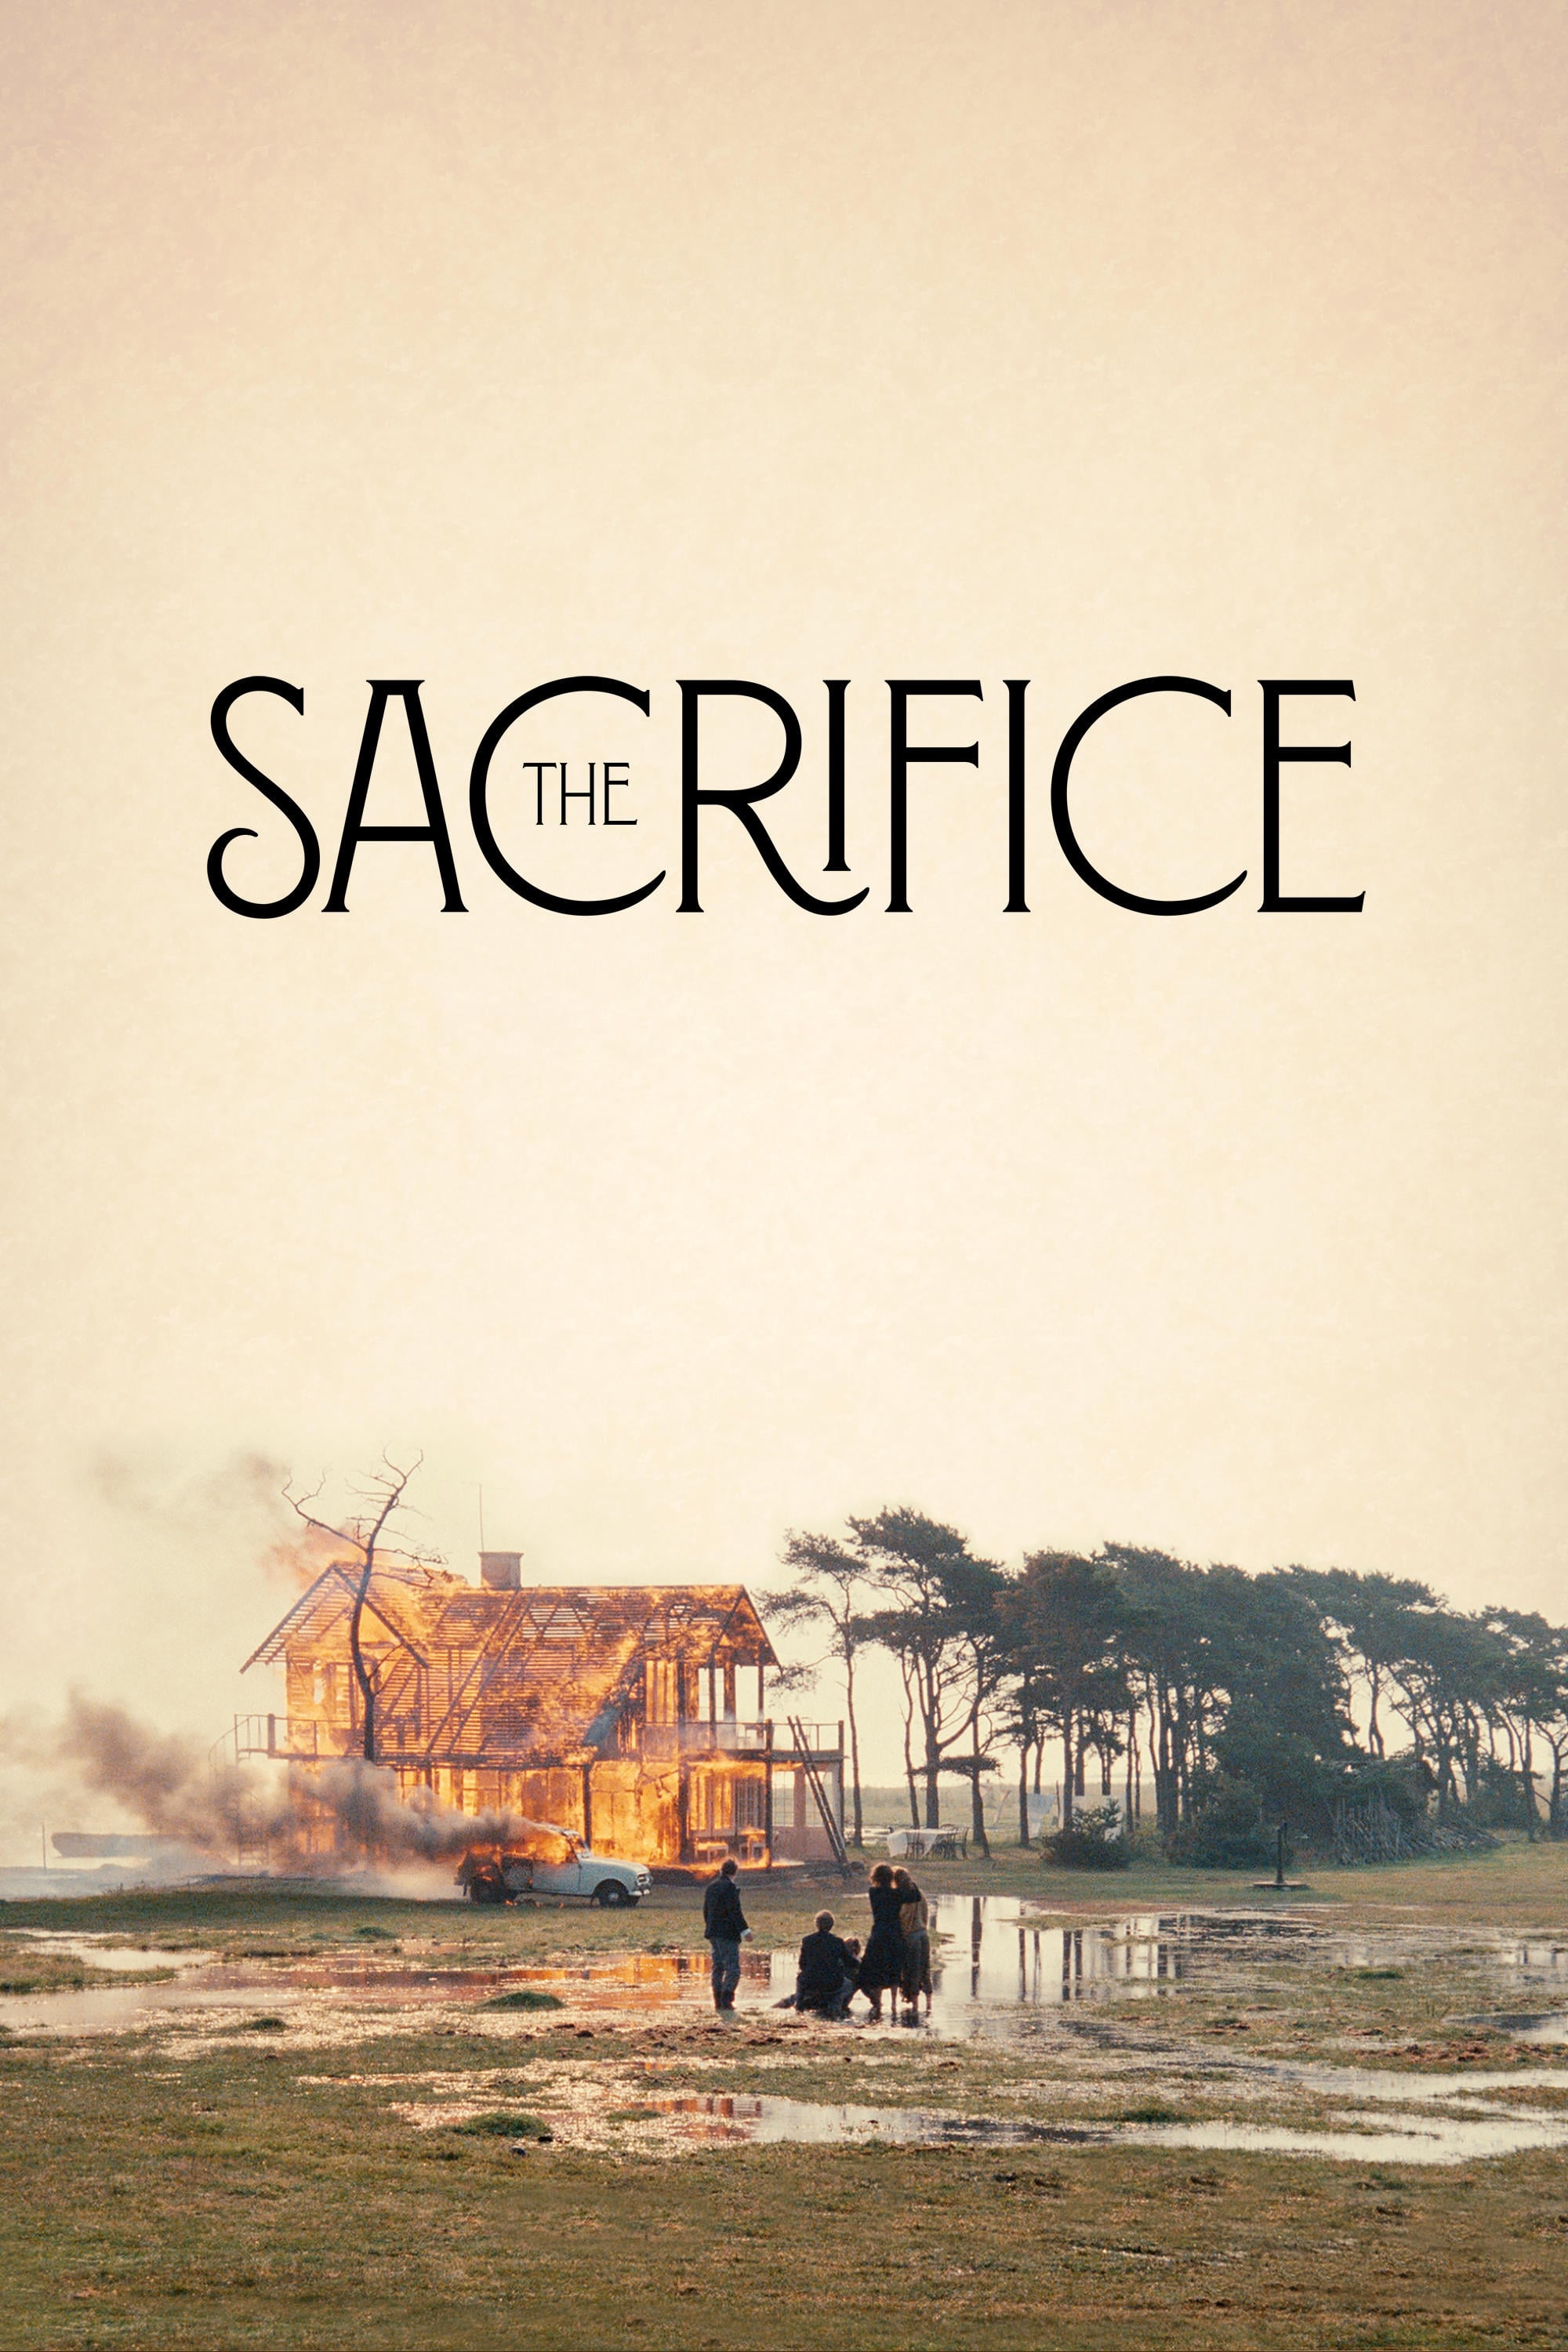 The Sacrifice (1986)